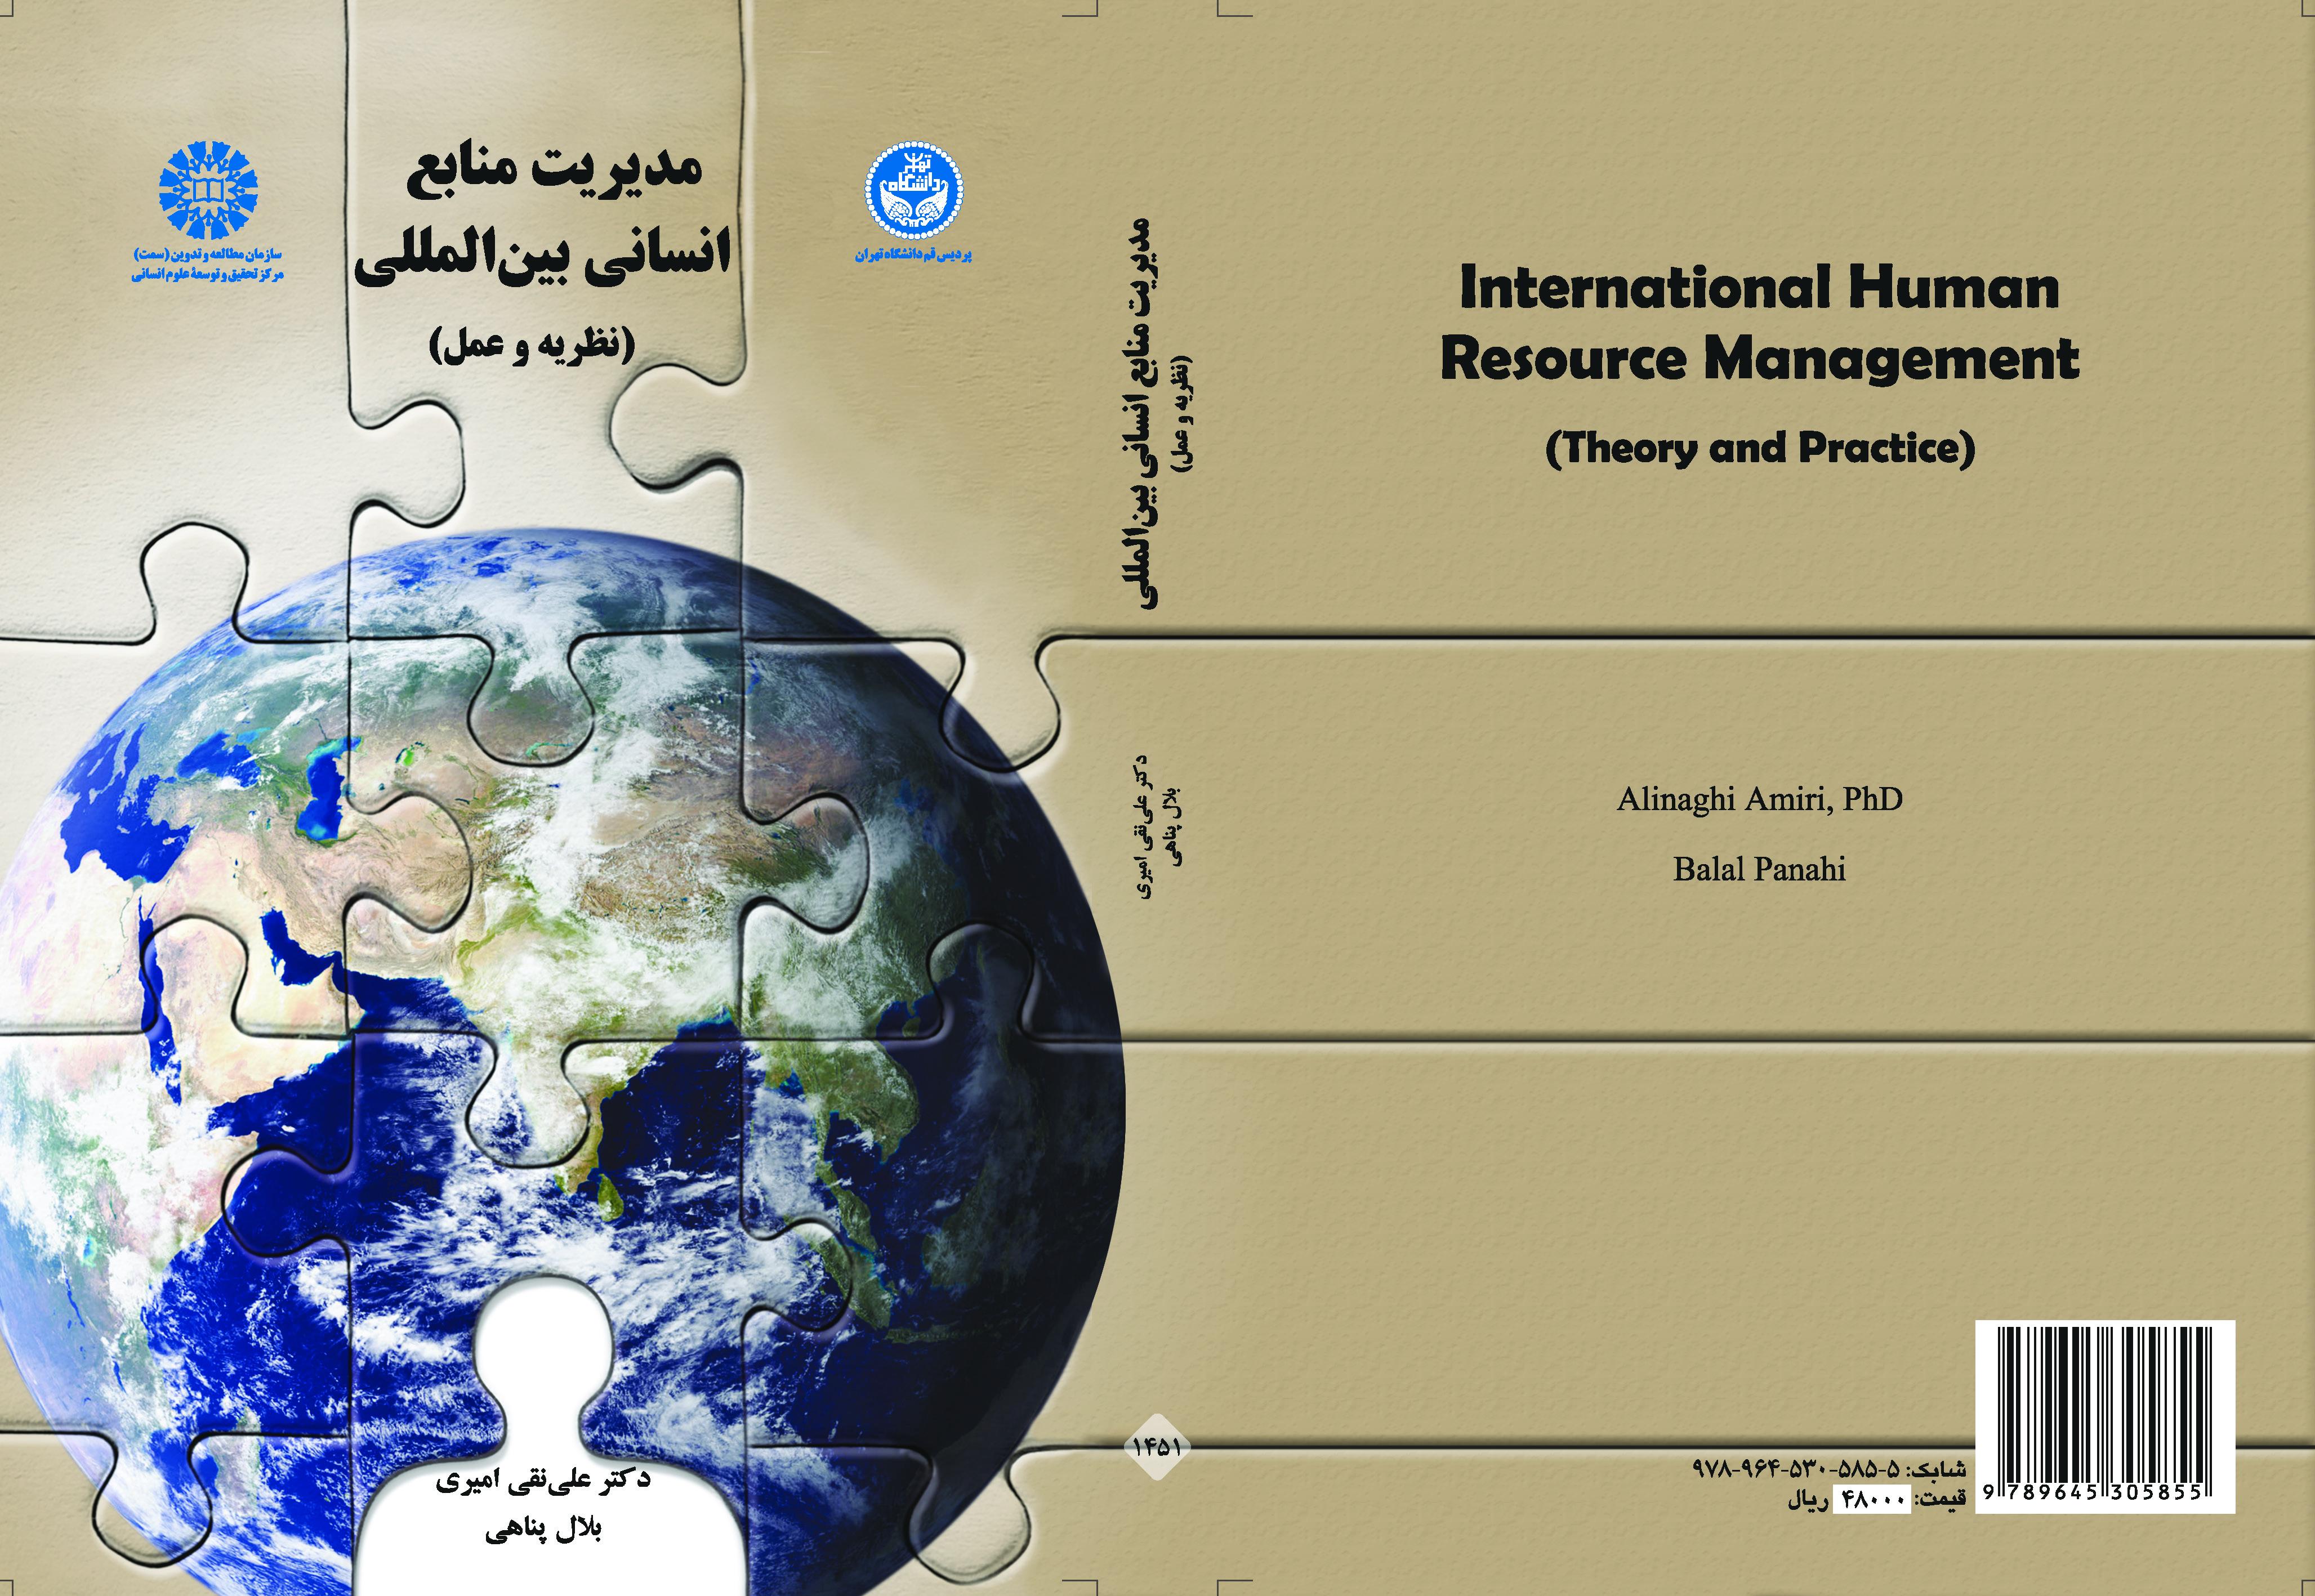 إدارة الموارد البشرية الدولية (النظرية والتطبيق)